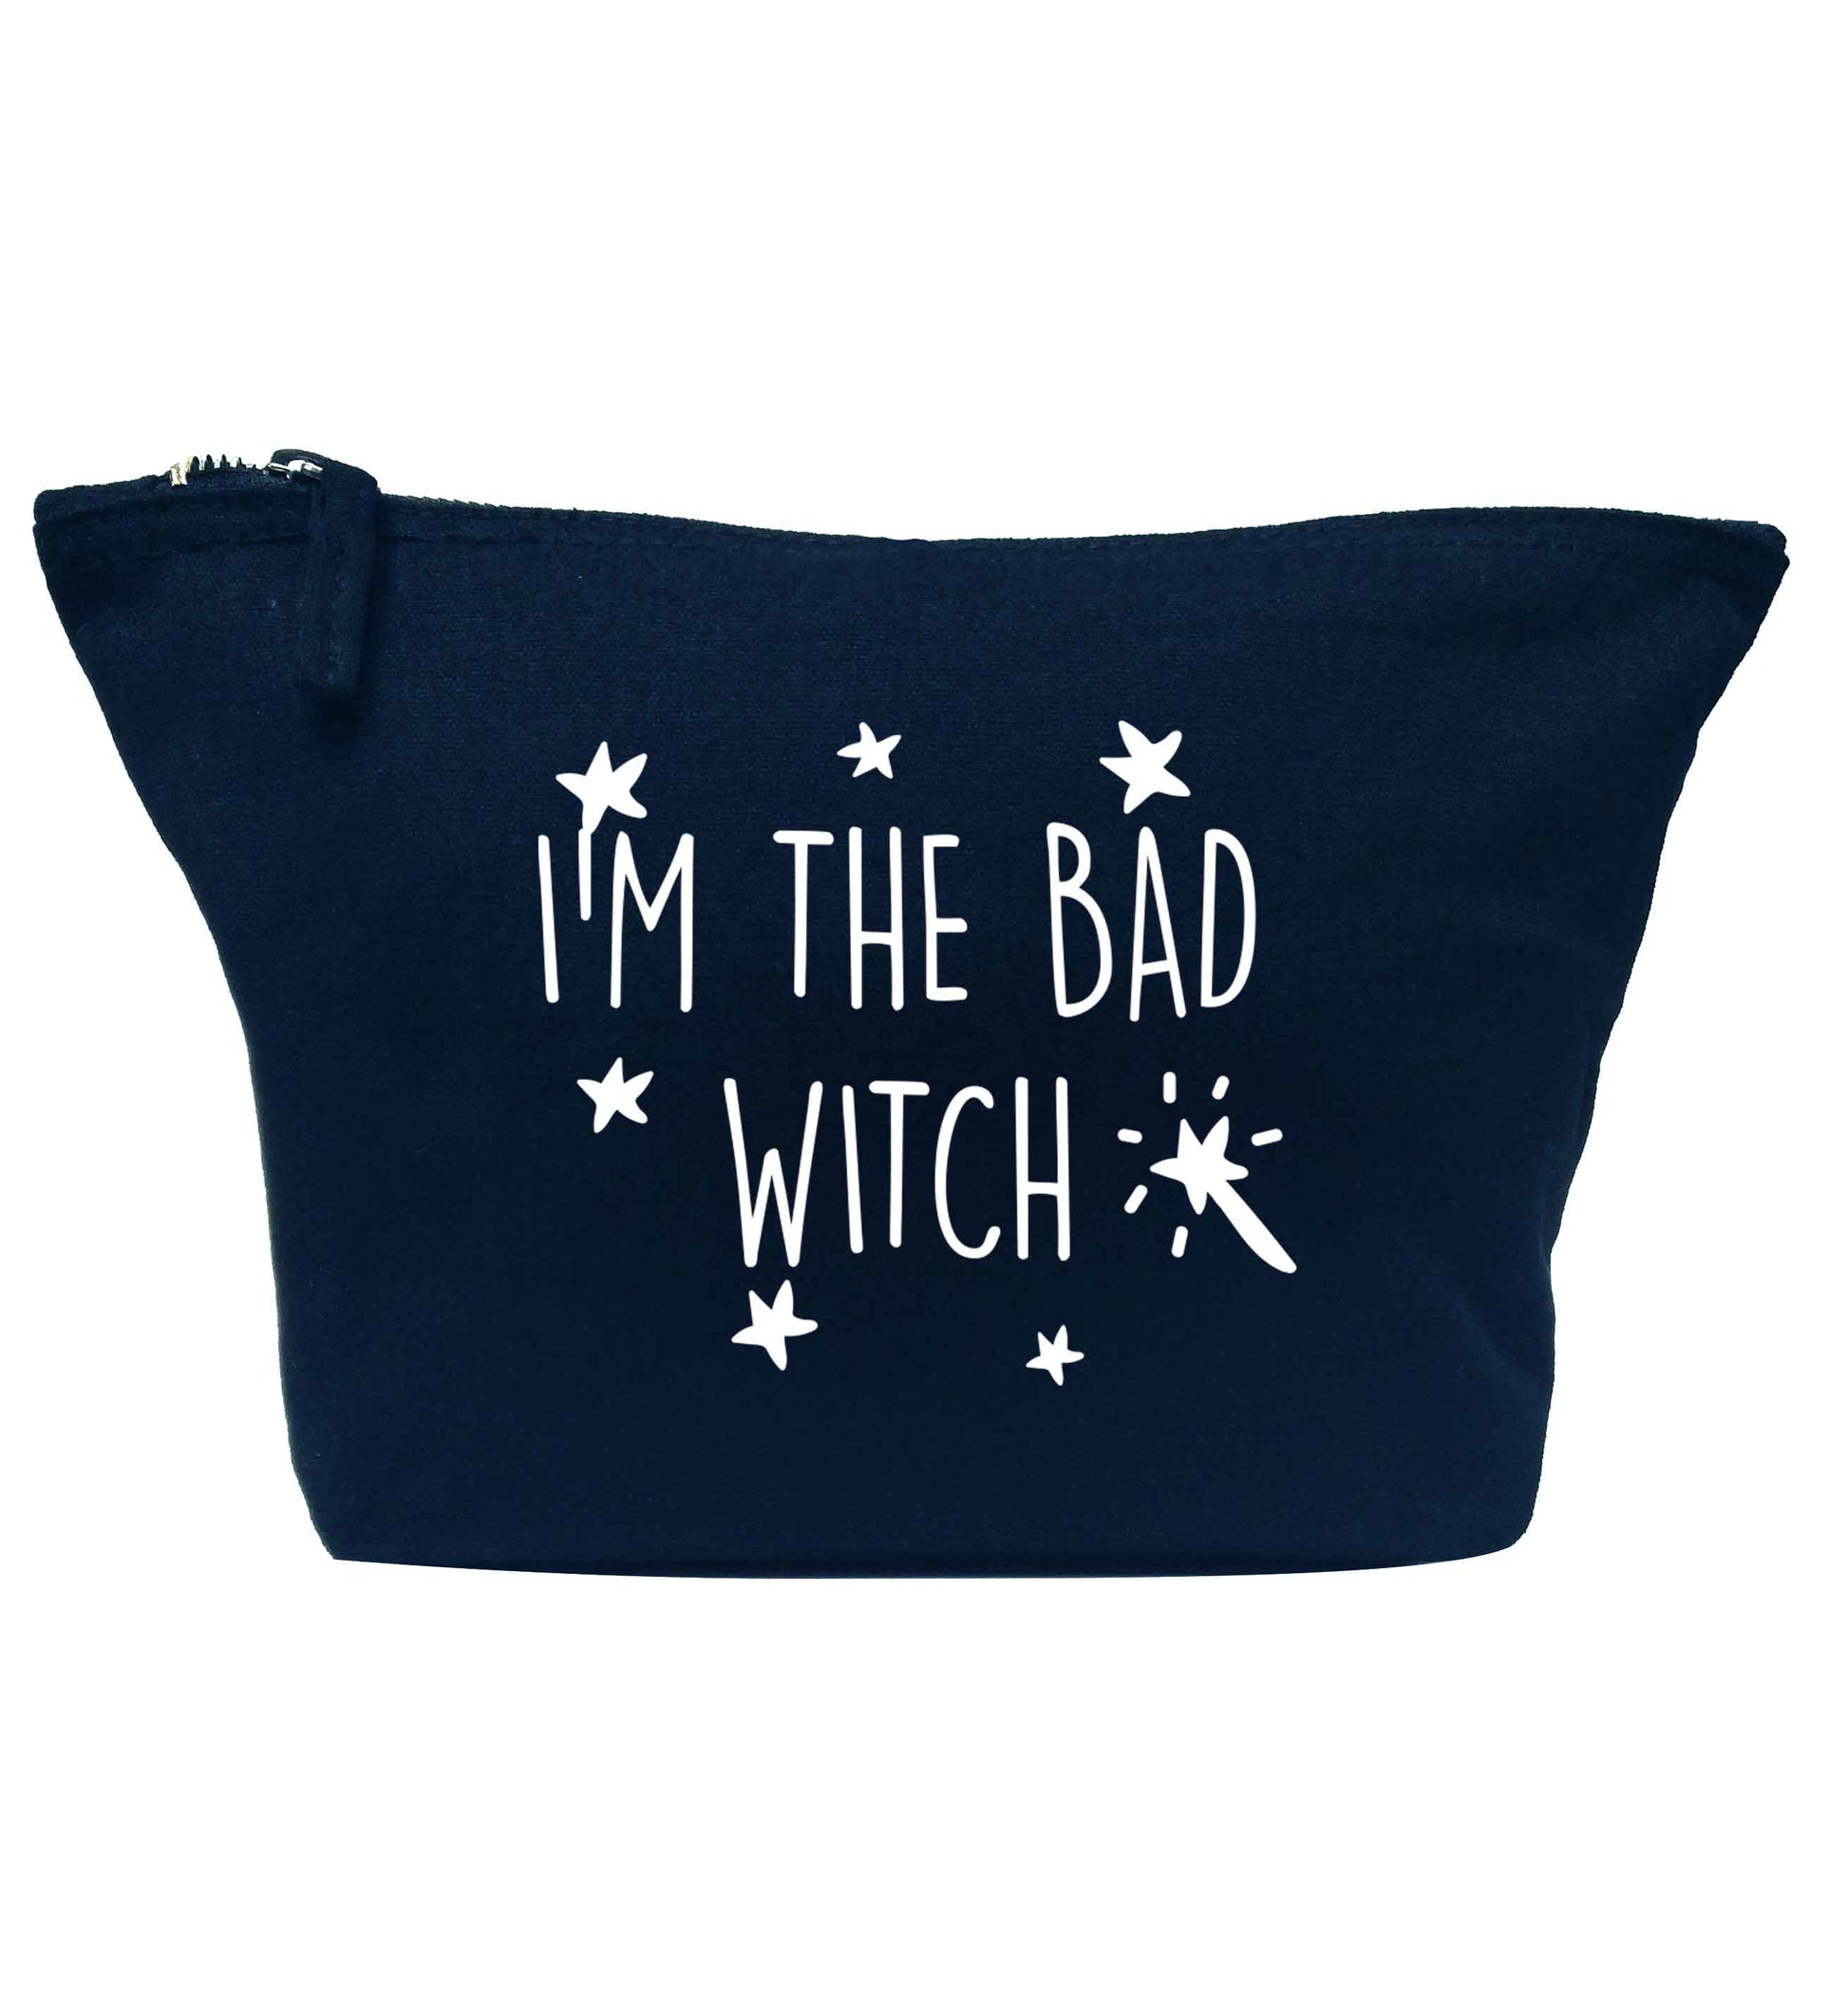 Bad witch navy makeup bag